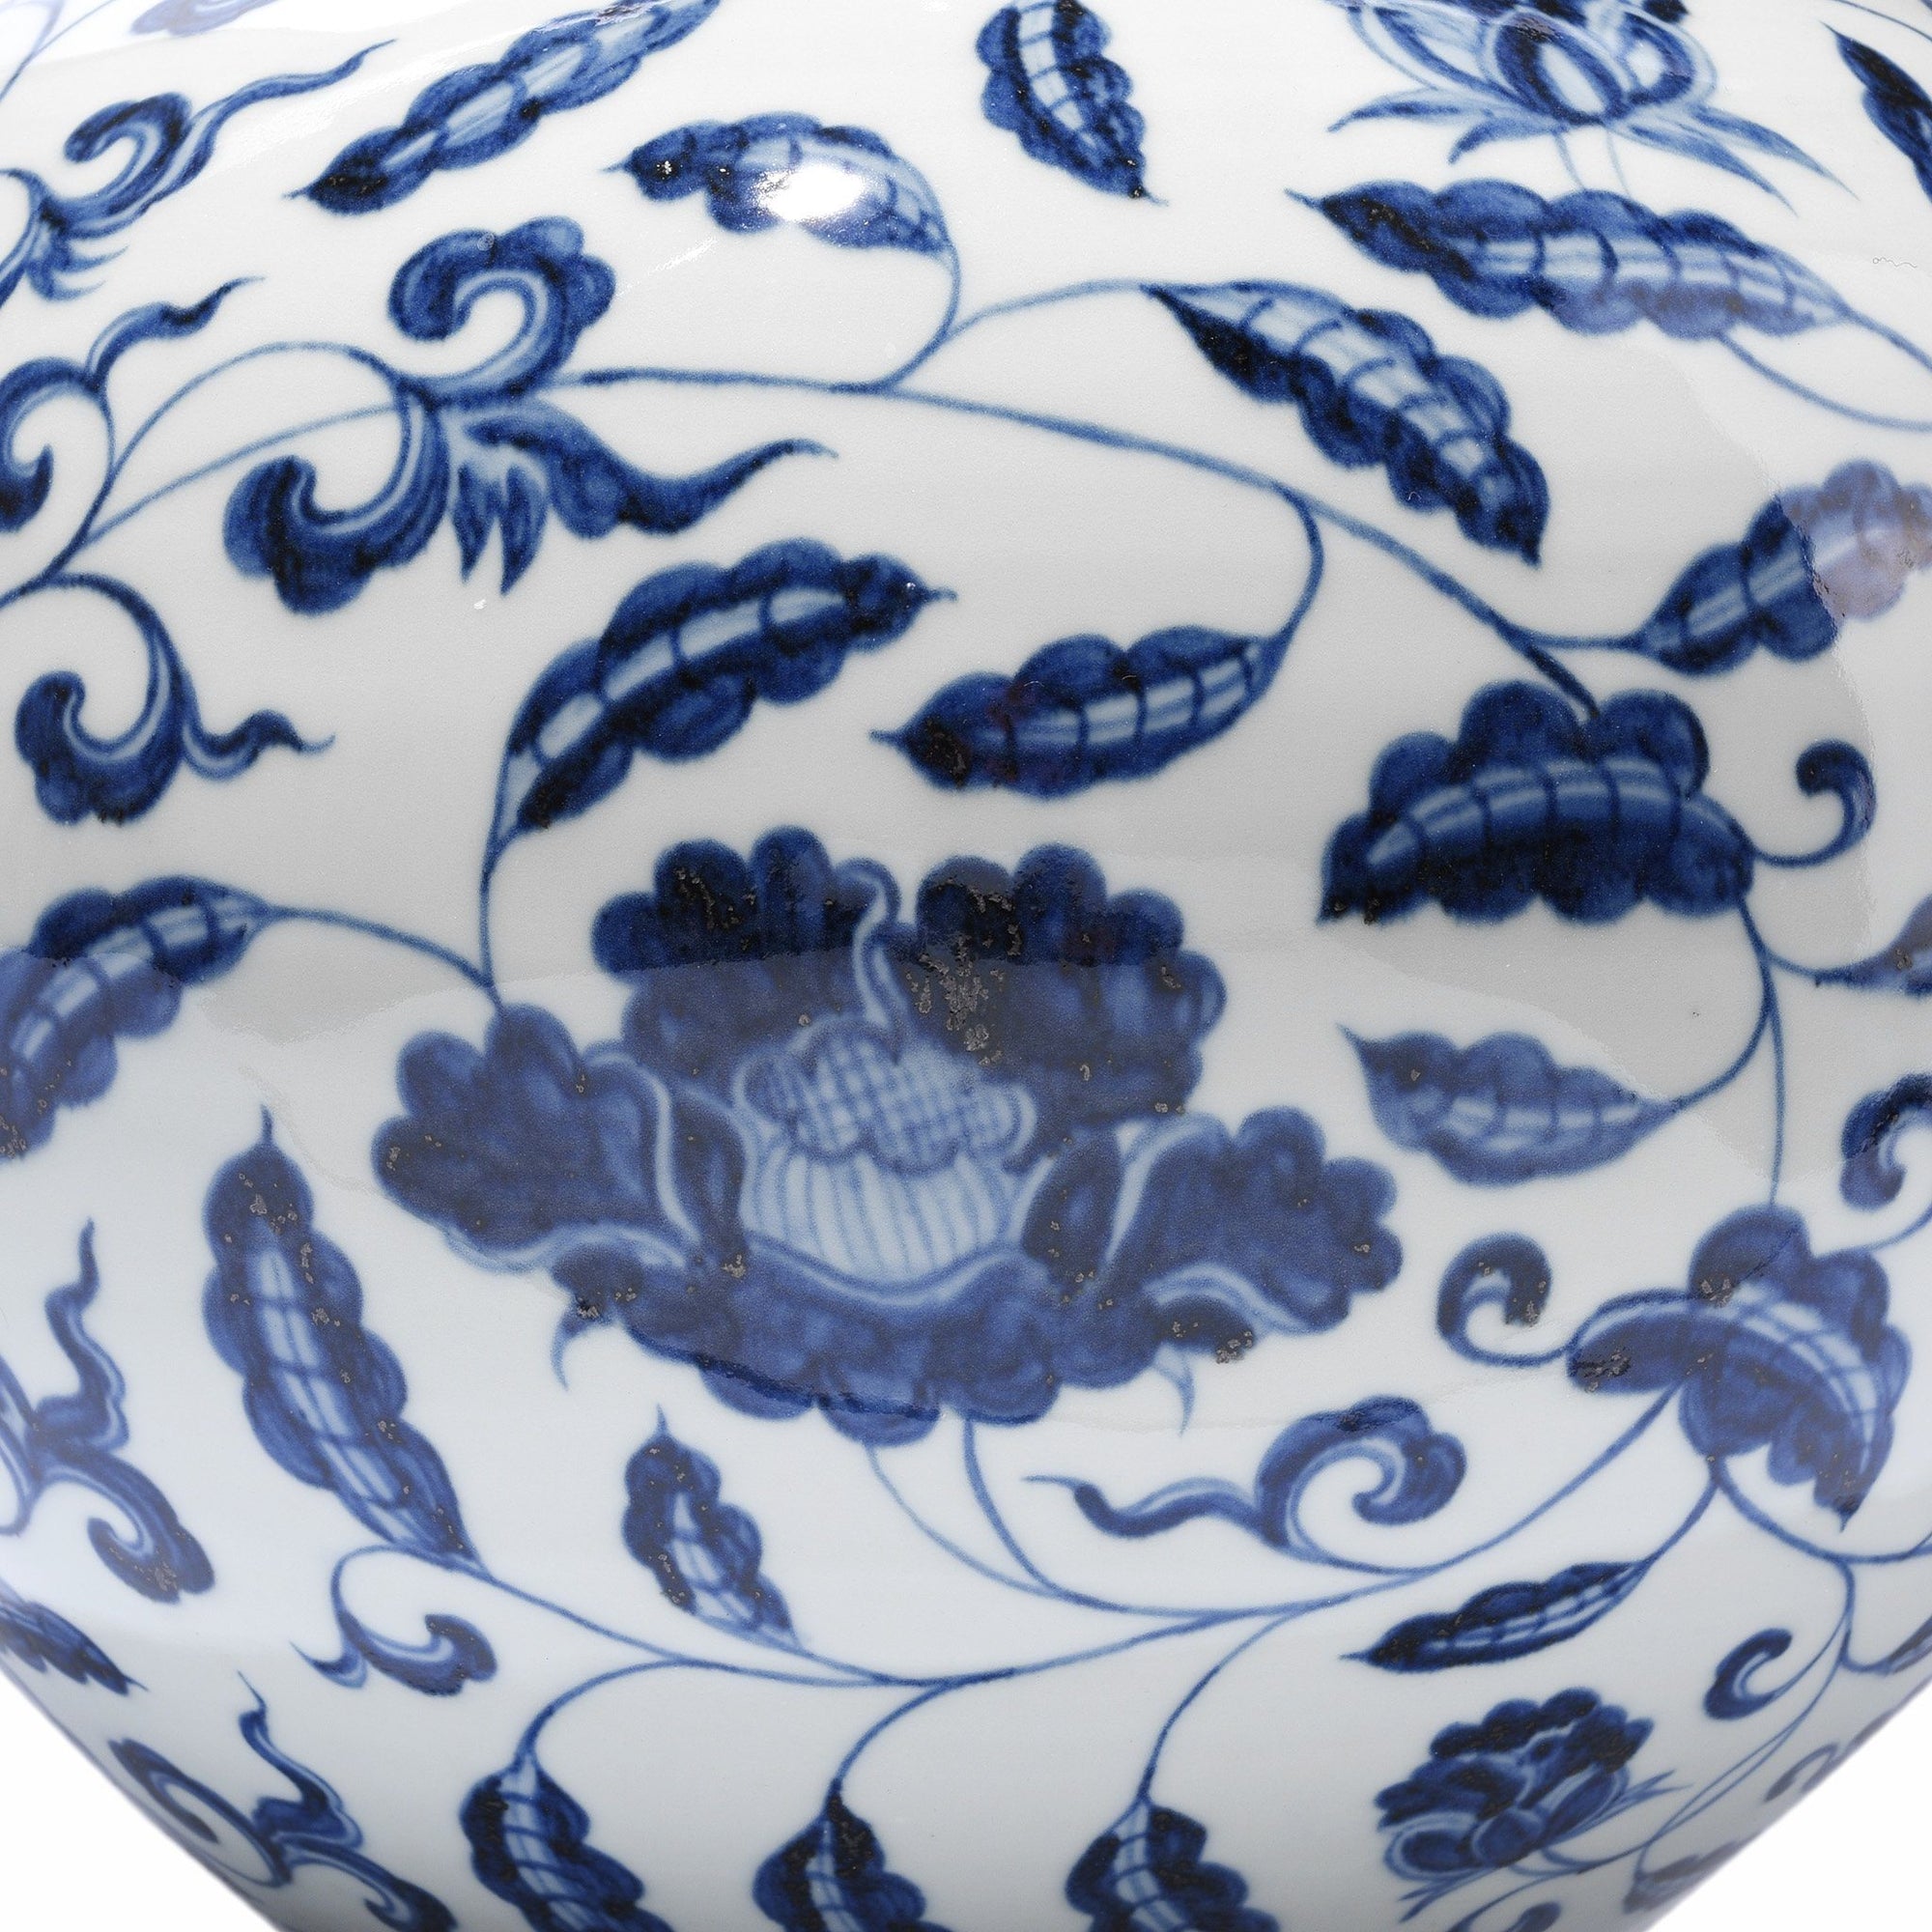 Blue & White Porcelain Tianqiuping Vase - Peony Design | Indigo Antiques